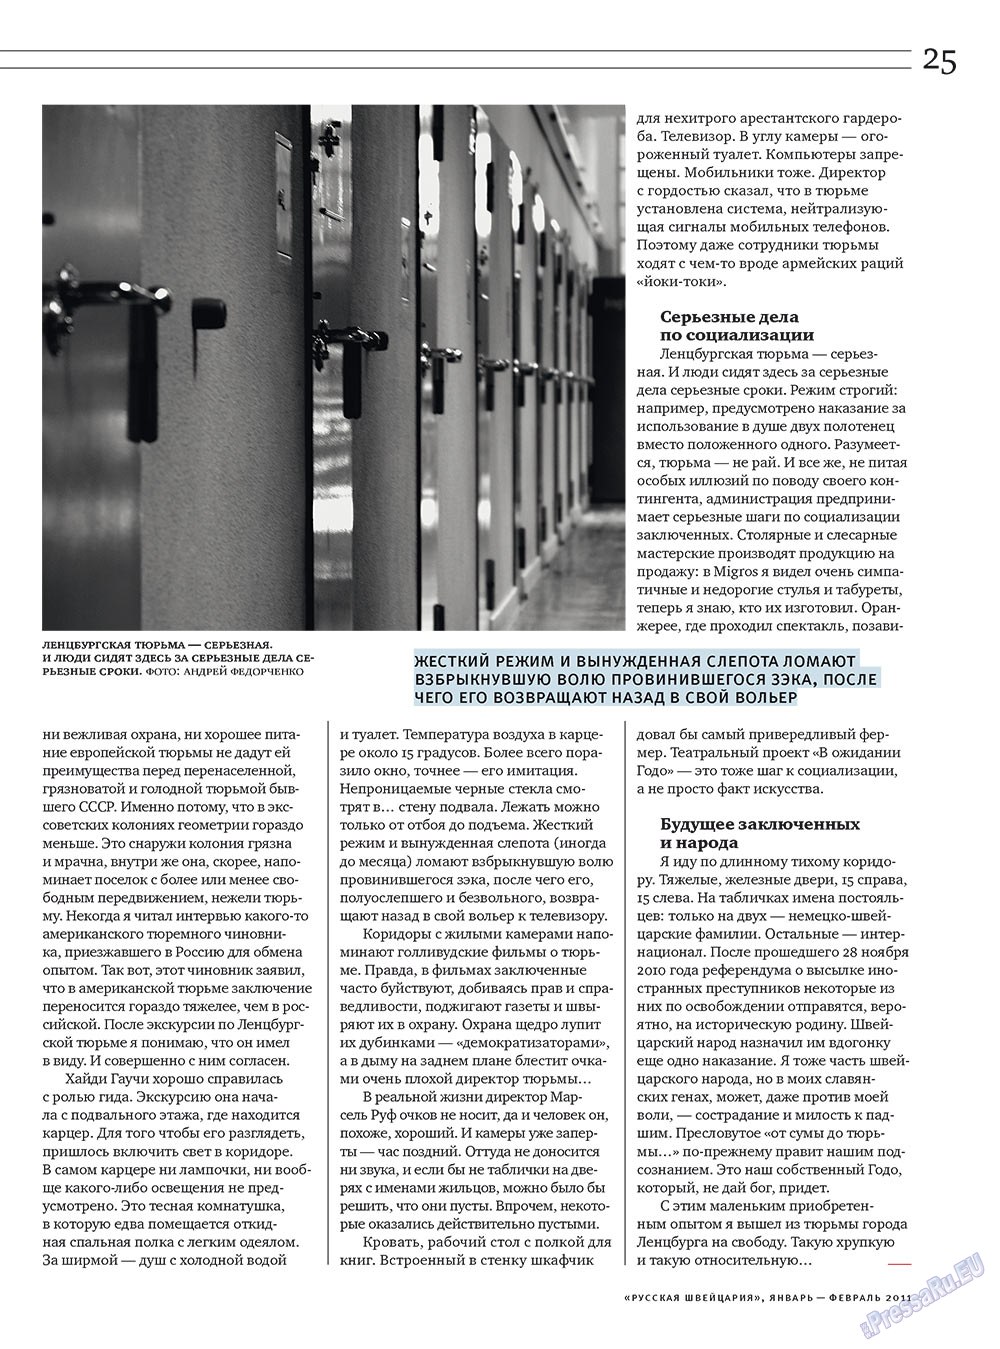 Русская Швейцария (журнал). 2011 год, номер 1, стр. 25